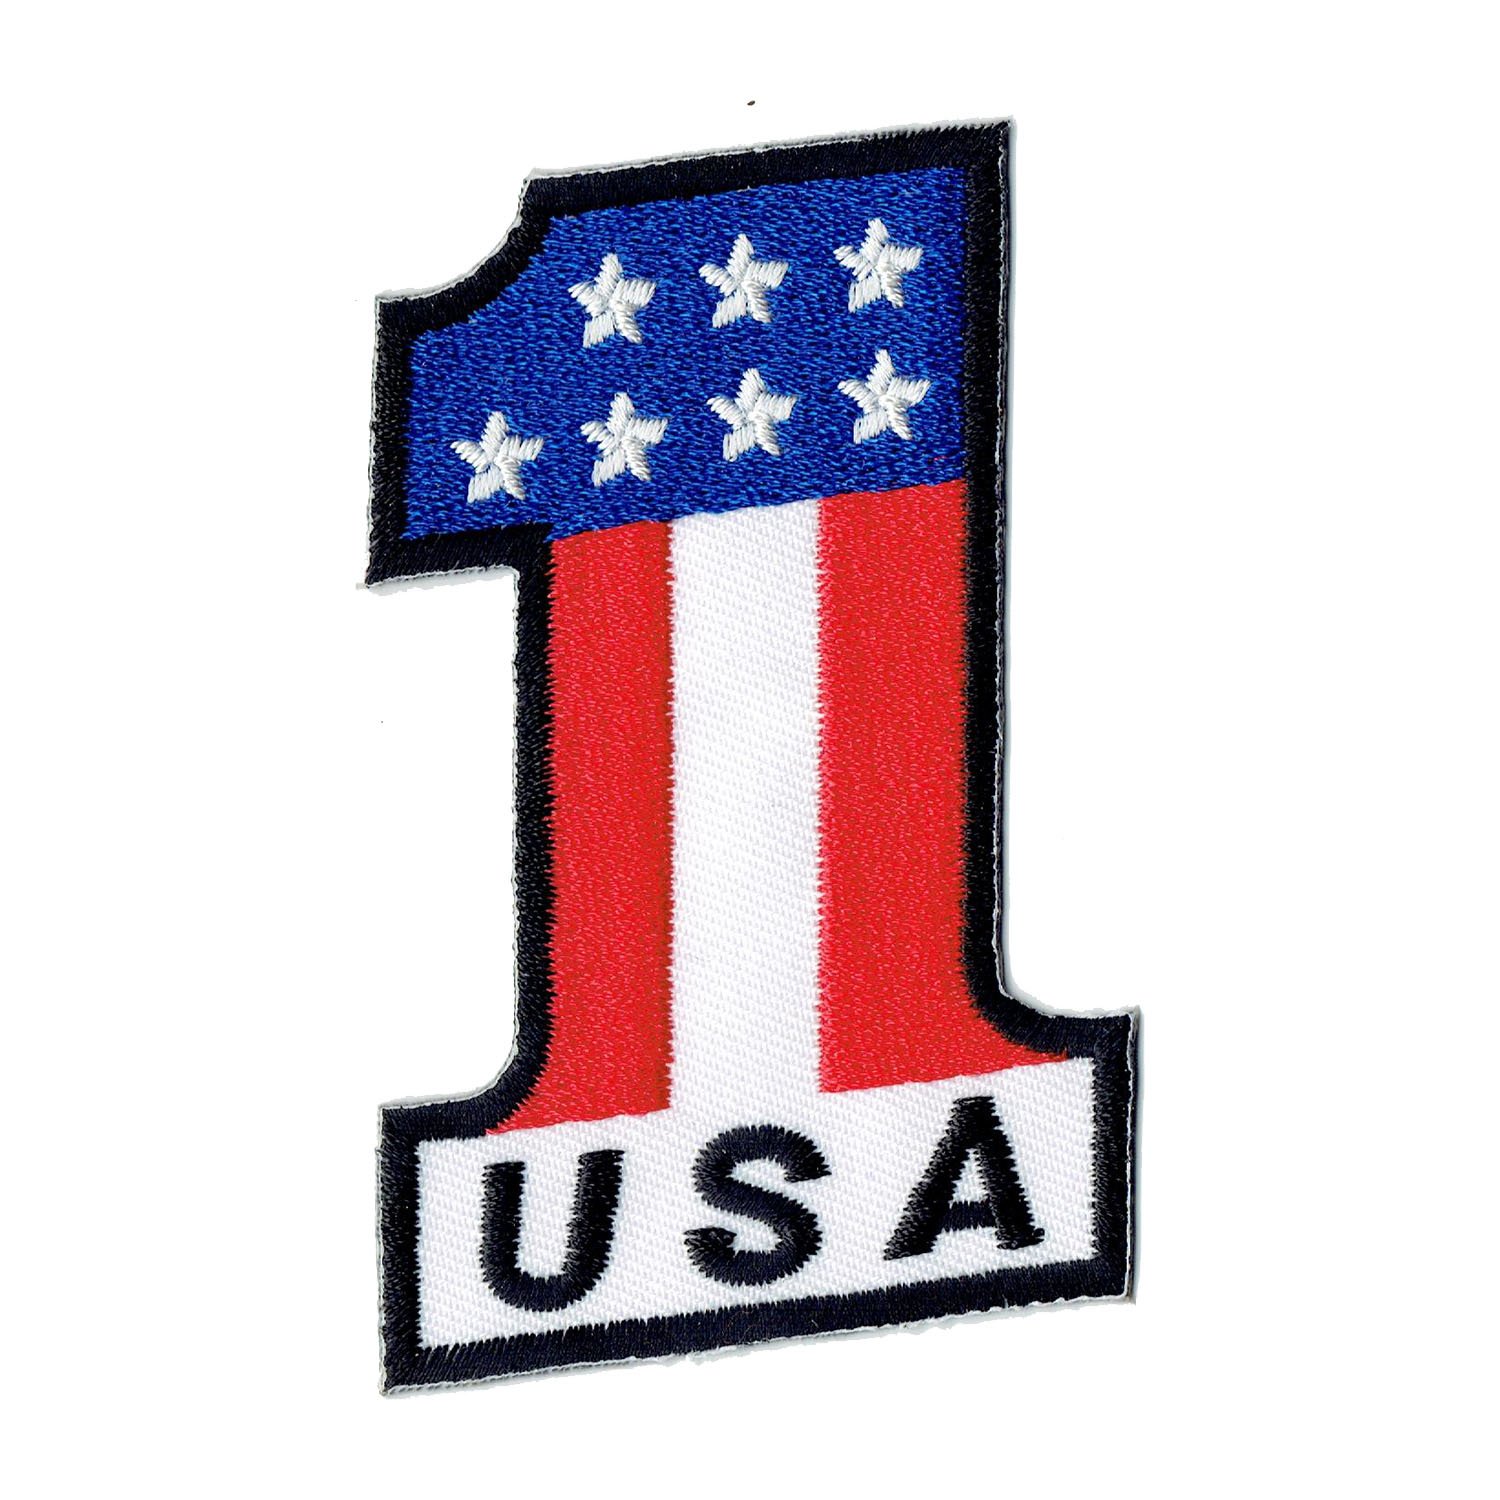 Aufnäher Bügelbild Aufbügler Iron on Patches Applikation USA 1 Flagge Stars and Stripes Rally von Bestellmich / Aufnäher